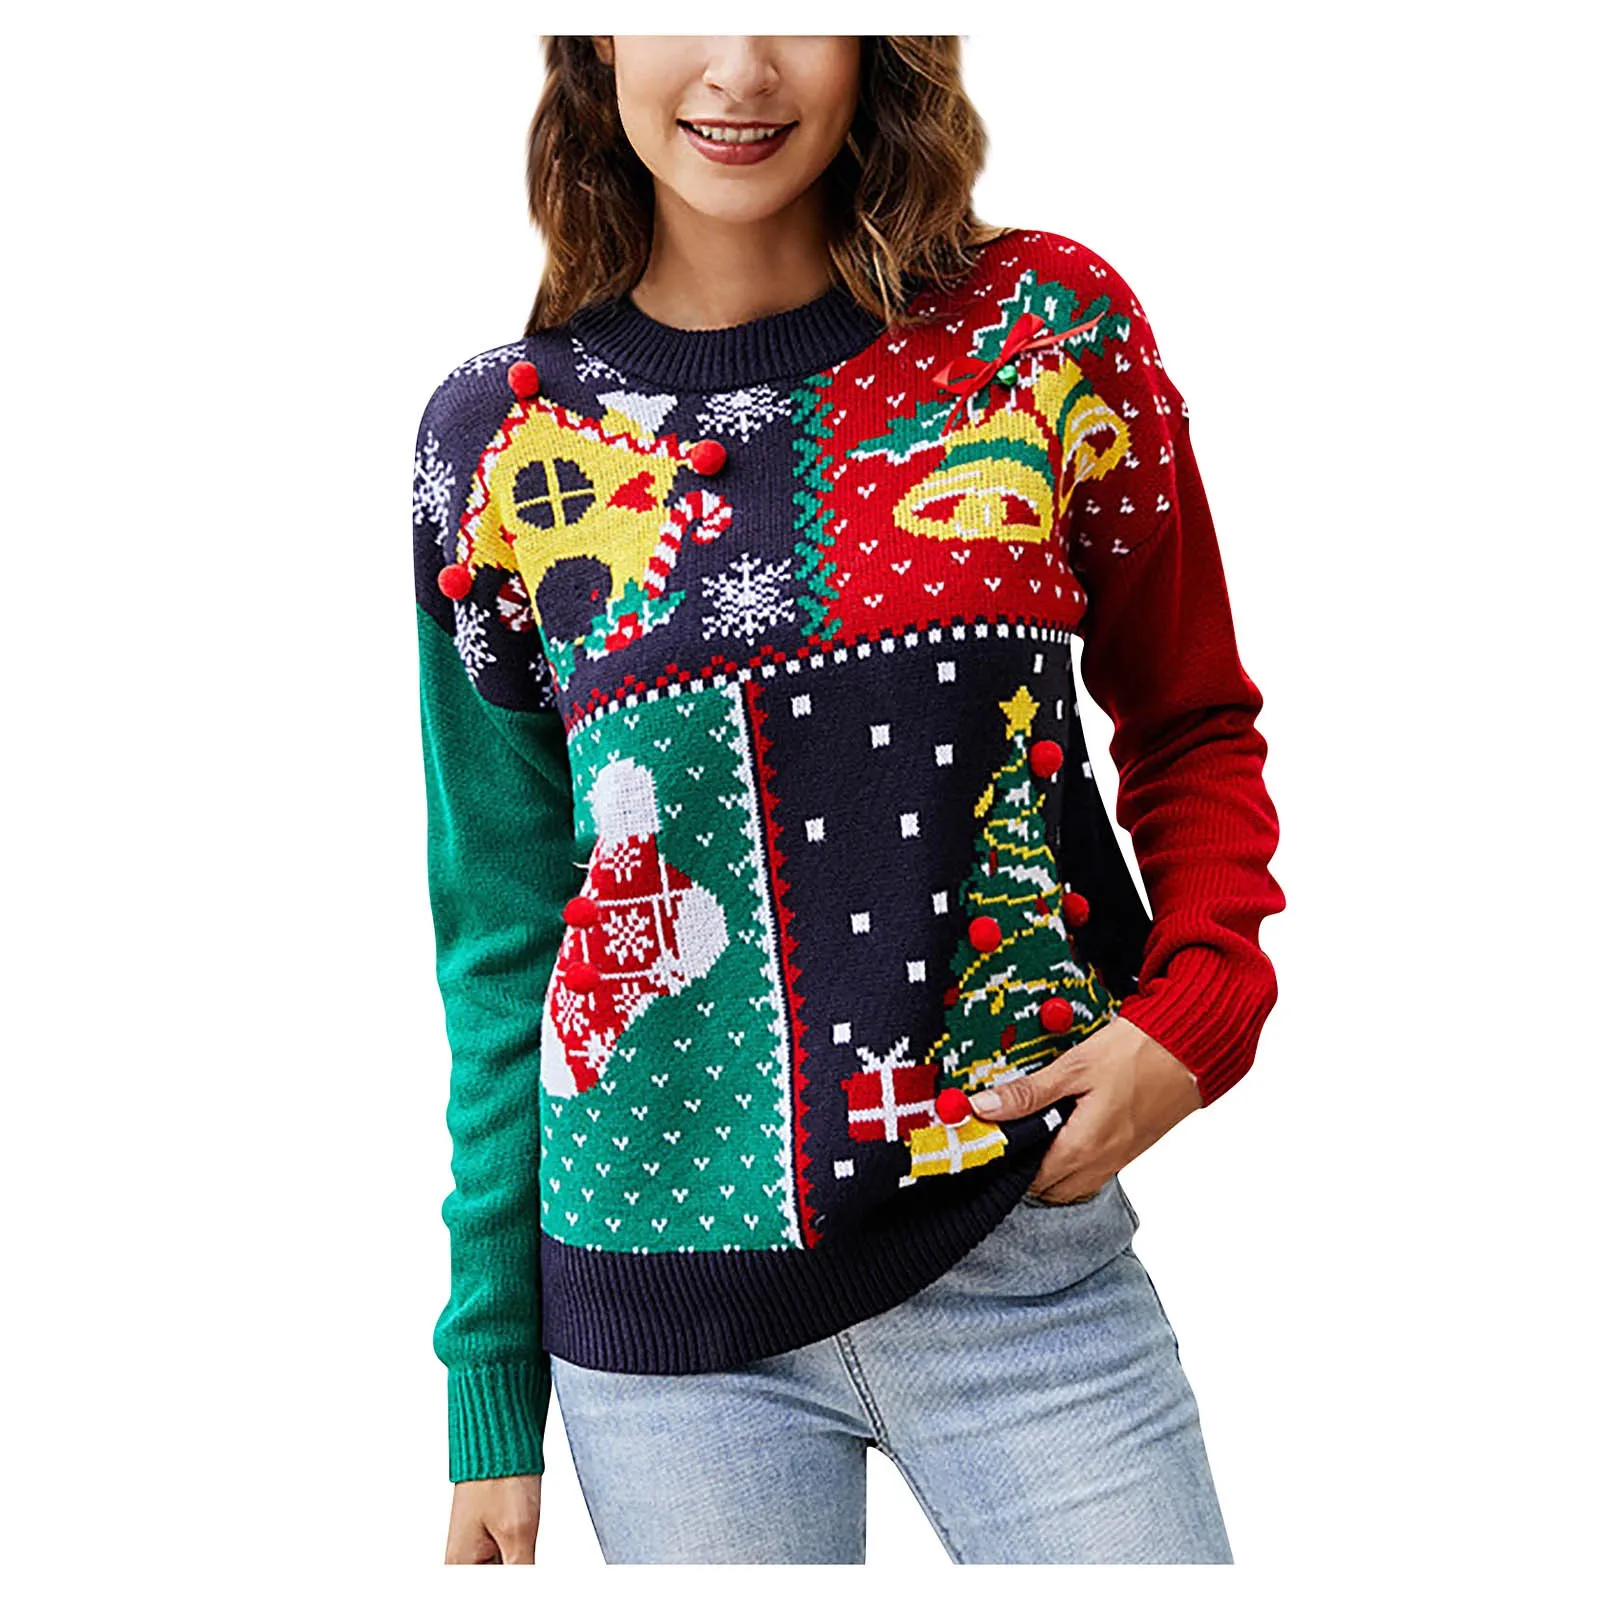 

Женский Рождественский свитер, пуловер с круглым вырезом, вязаный пуловер в рубчик, Зимний короткий рождественский джемпер большого размера, повседневный яркий свитер контрастных цветов